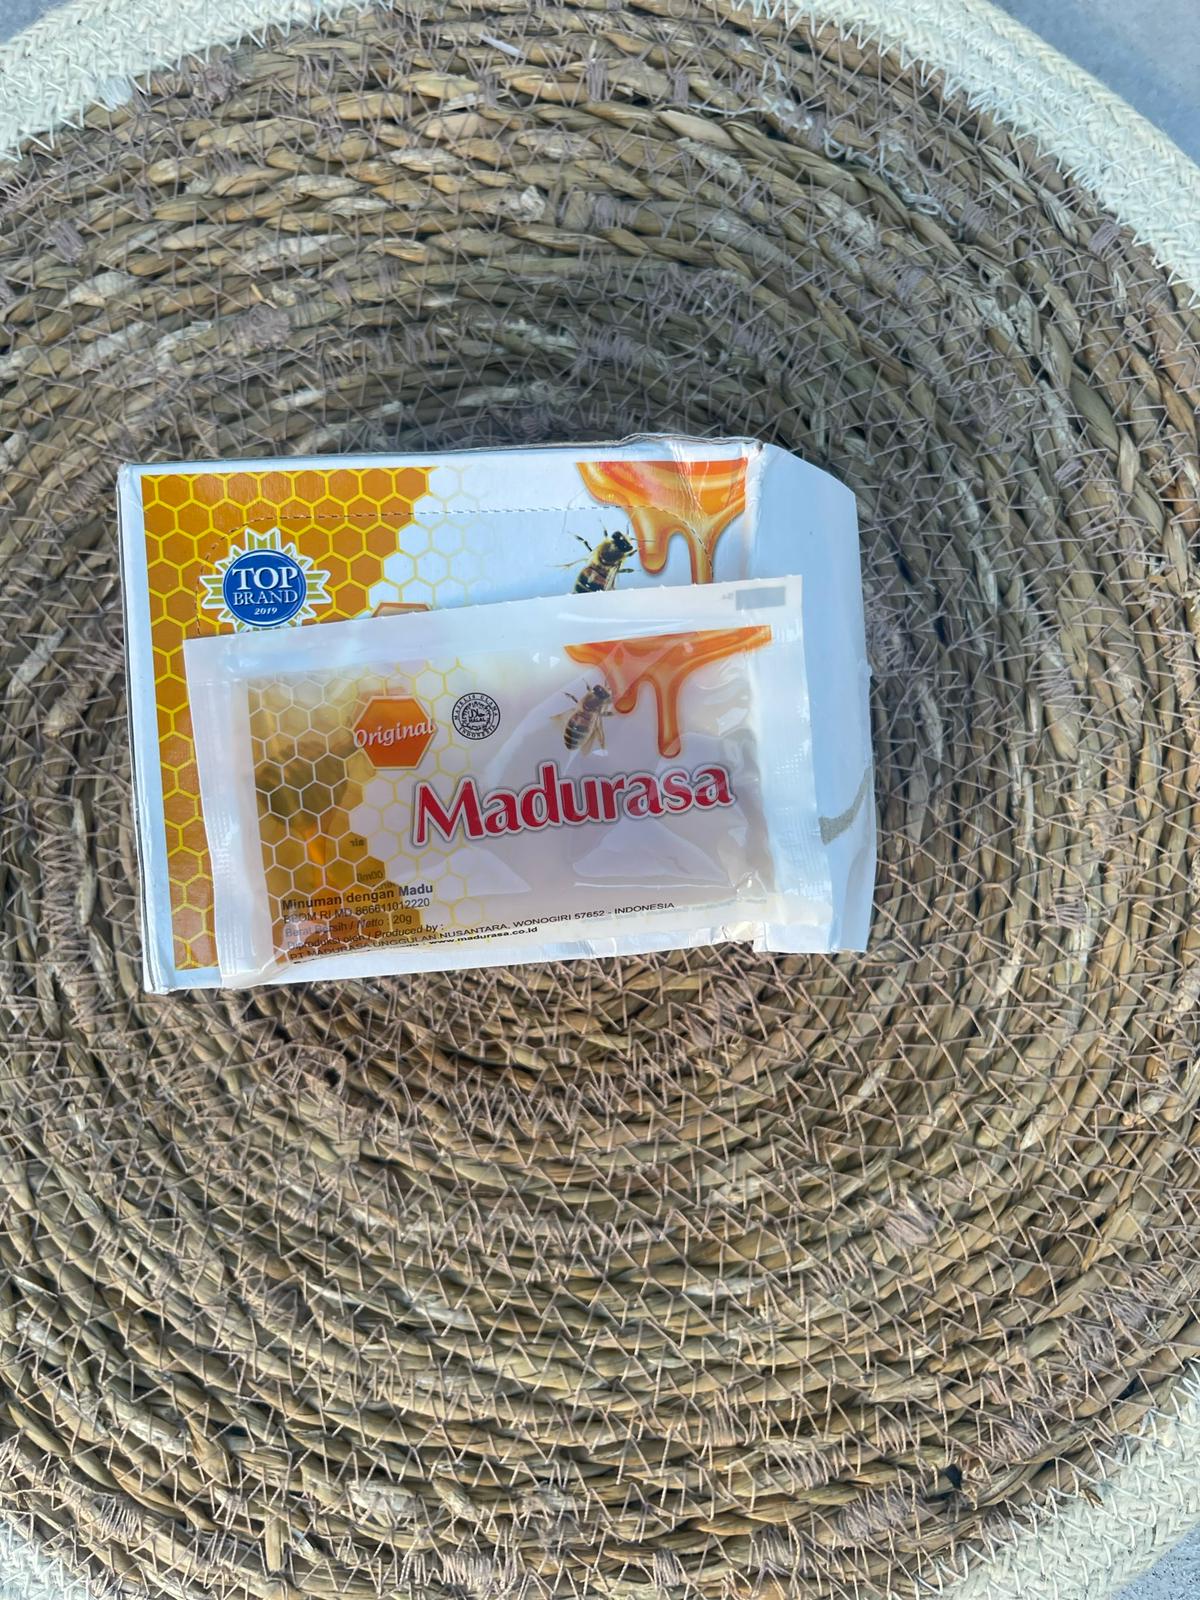 Découvrez le miel Madurasa : la perfection dorée dans chaque